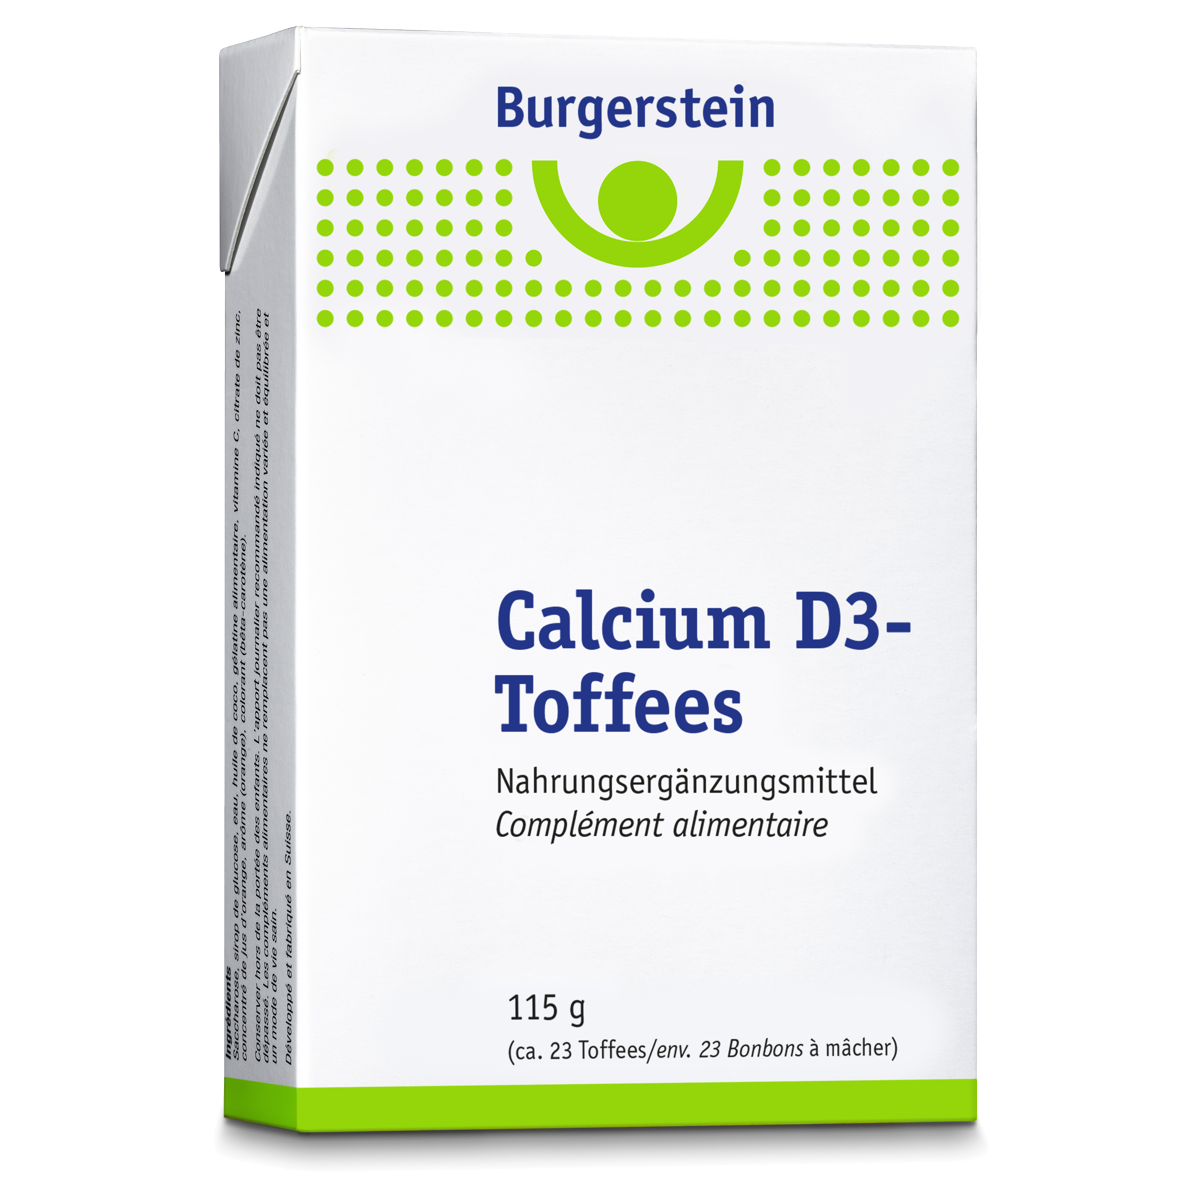 Burgerstein Calcium D3-Toffees 115 g